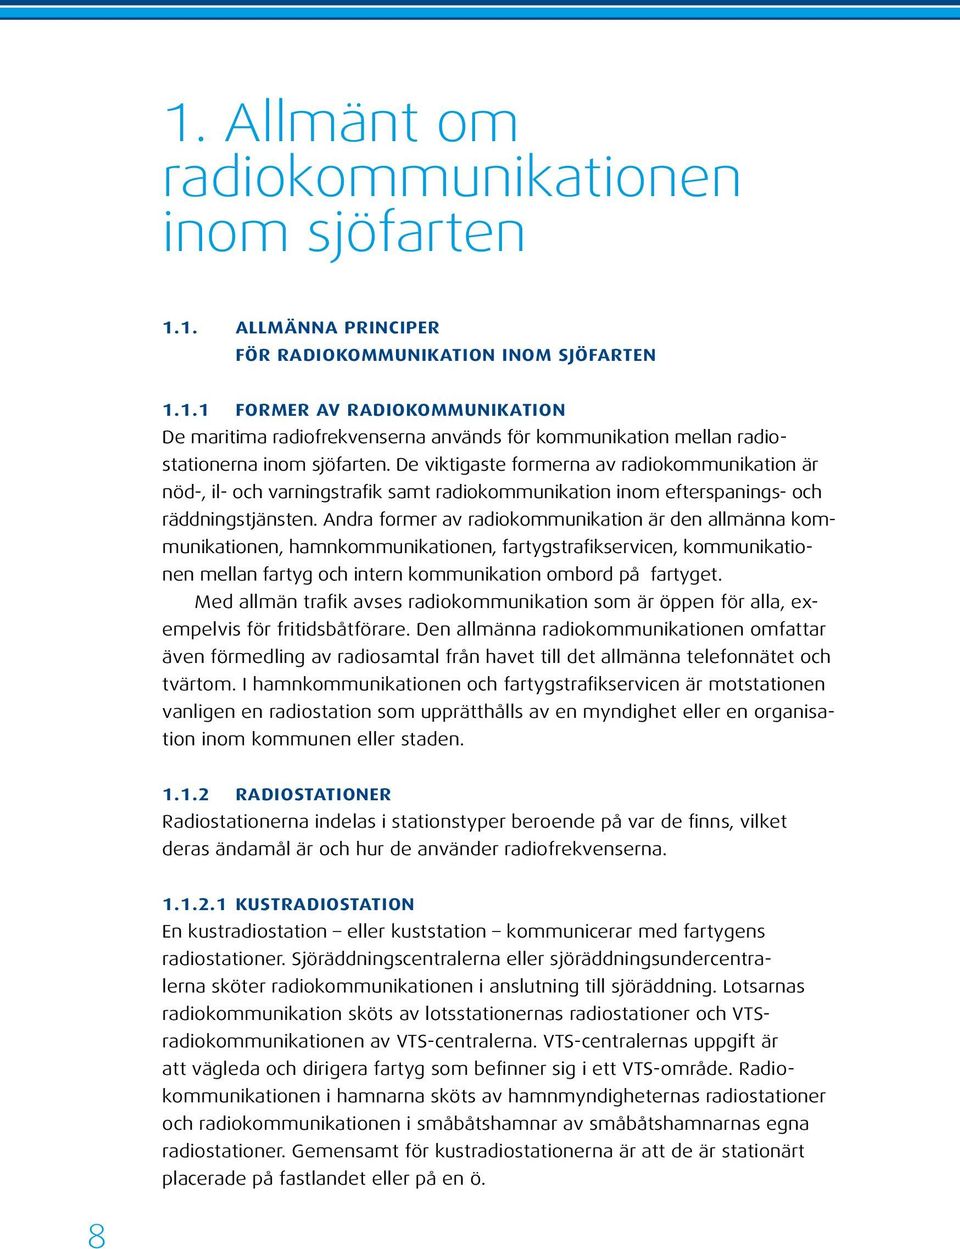 Andra former av radiokommunikation är den allmänna kommunikationen, hamnkommunikationen, fartygstrafikservicen, kommunikationen mellan fartyg och intern kommunikation ombord på fartyget.